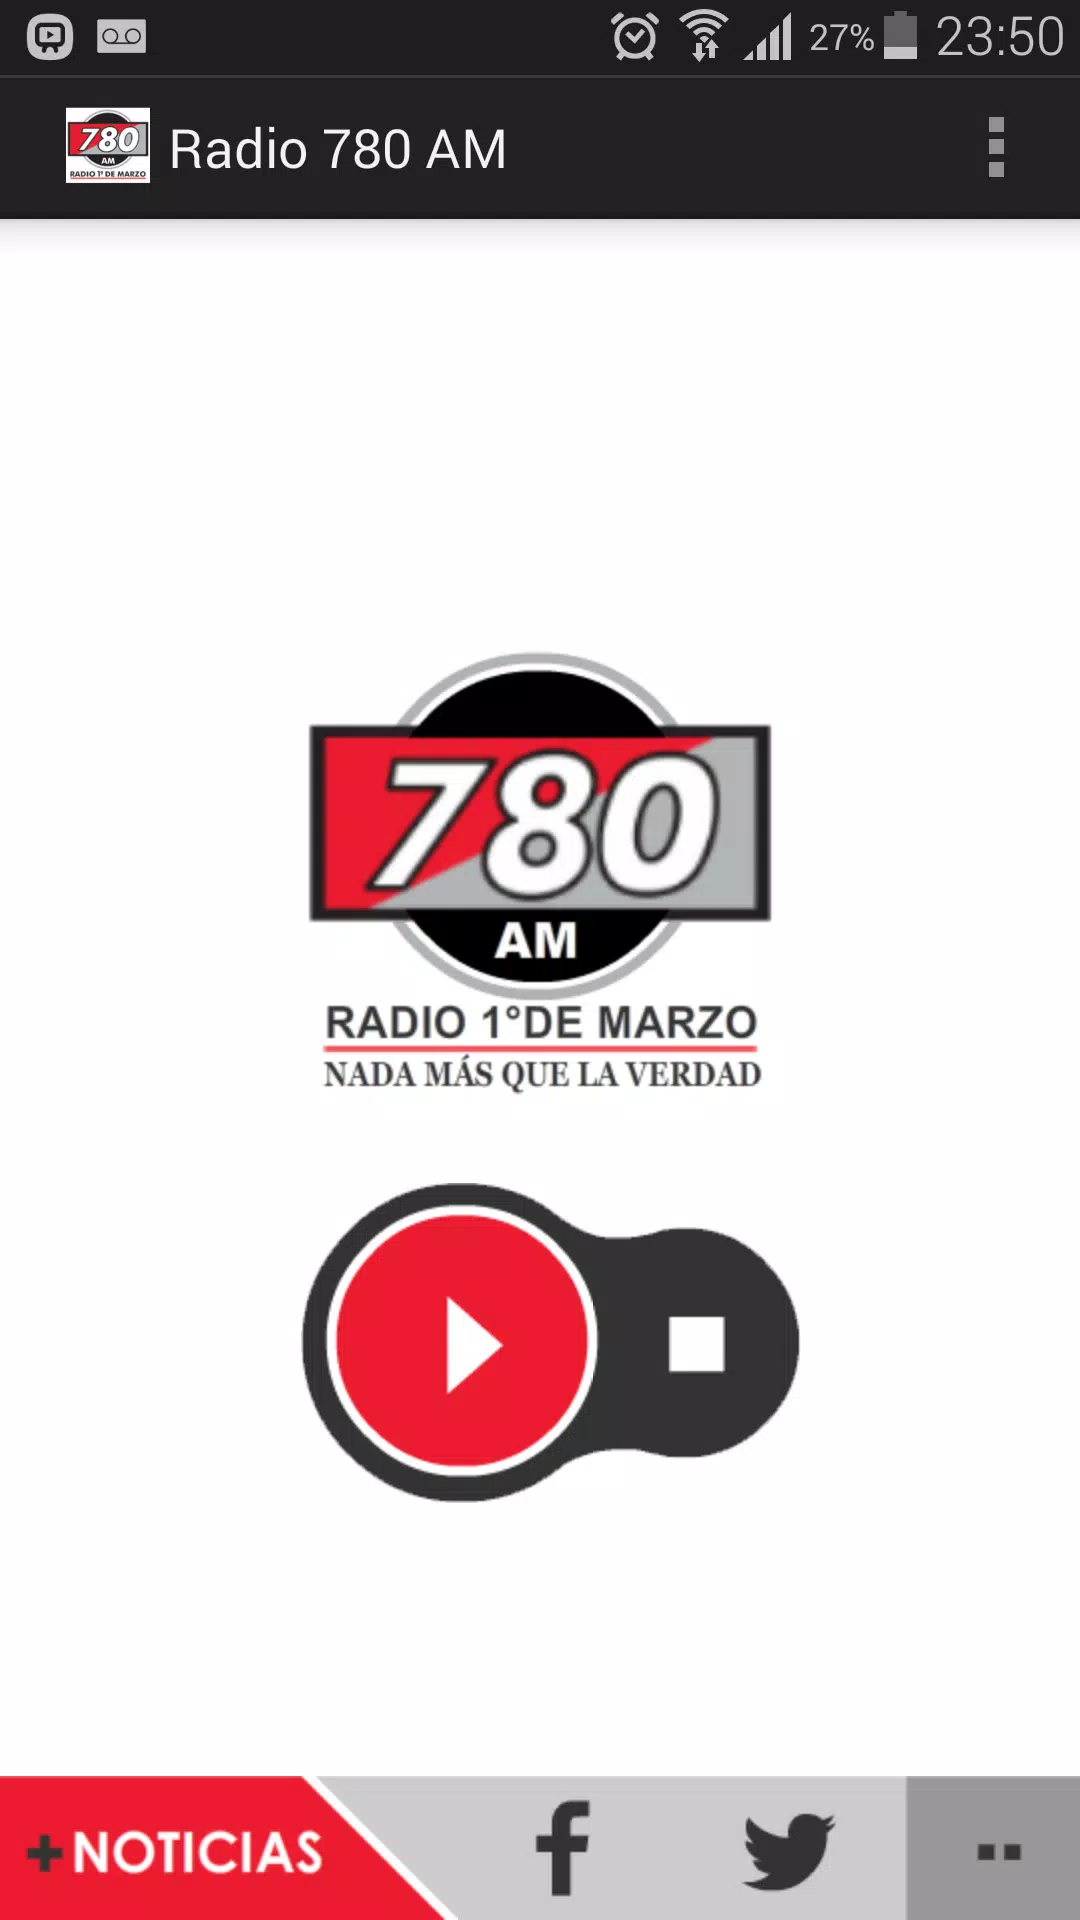 780am - Radio Primero de Marzo for Android - APK Download